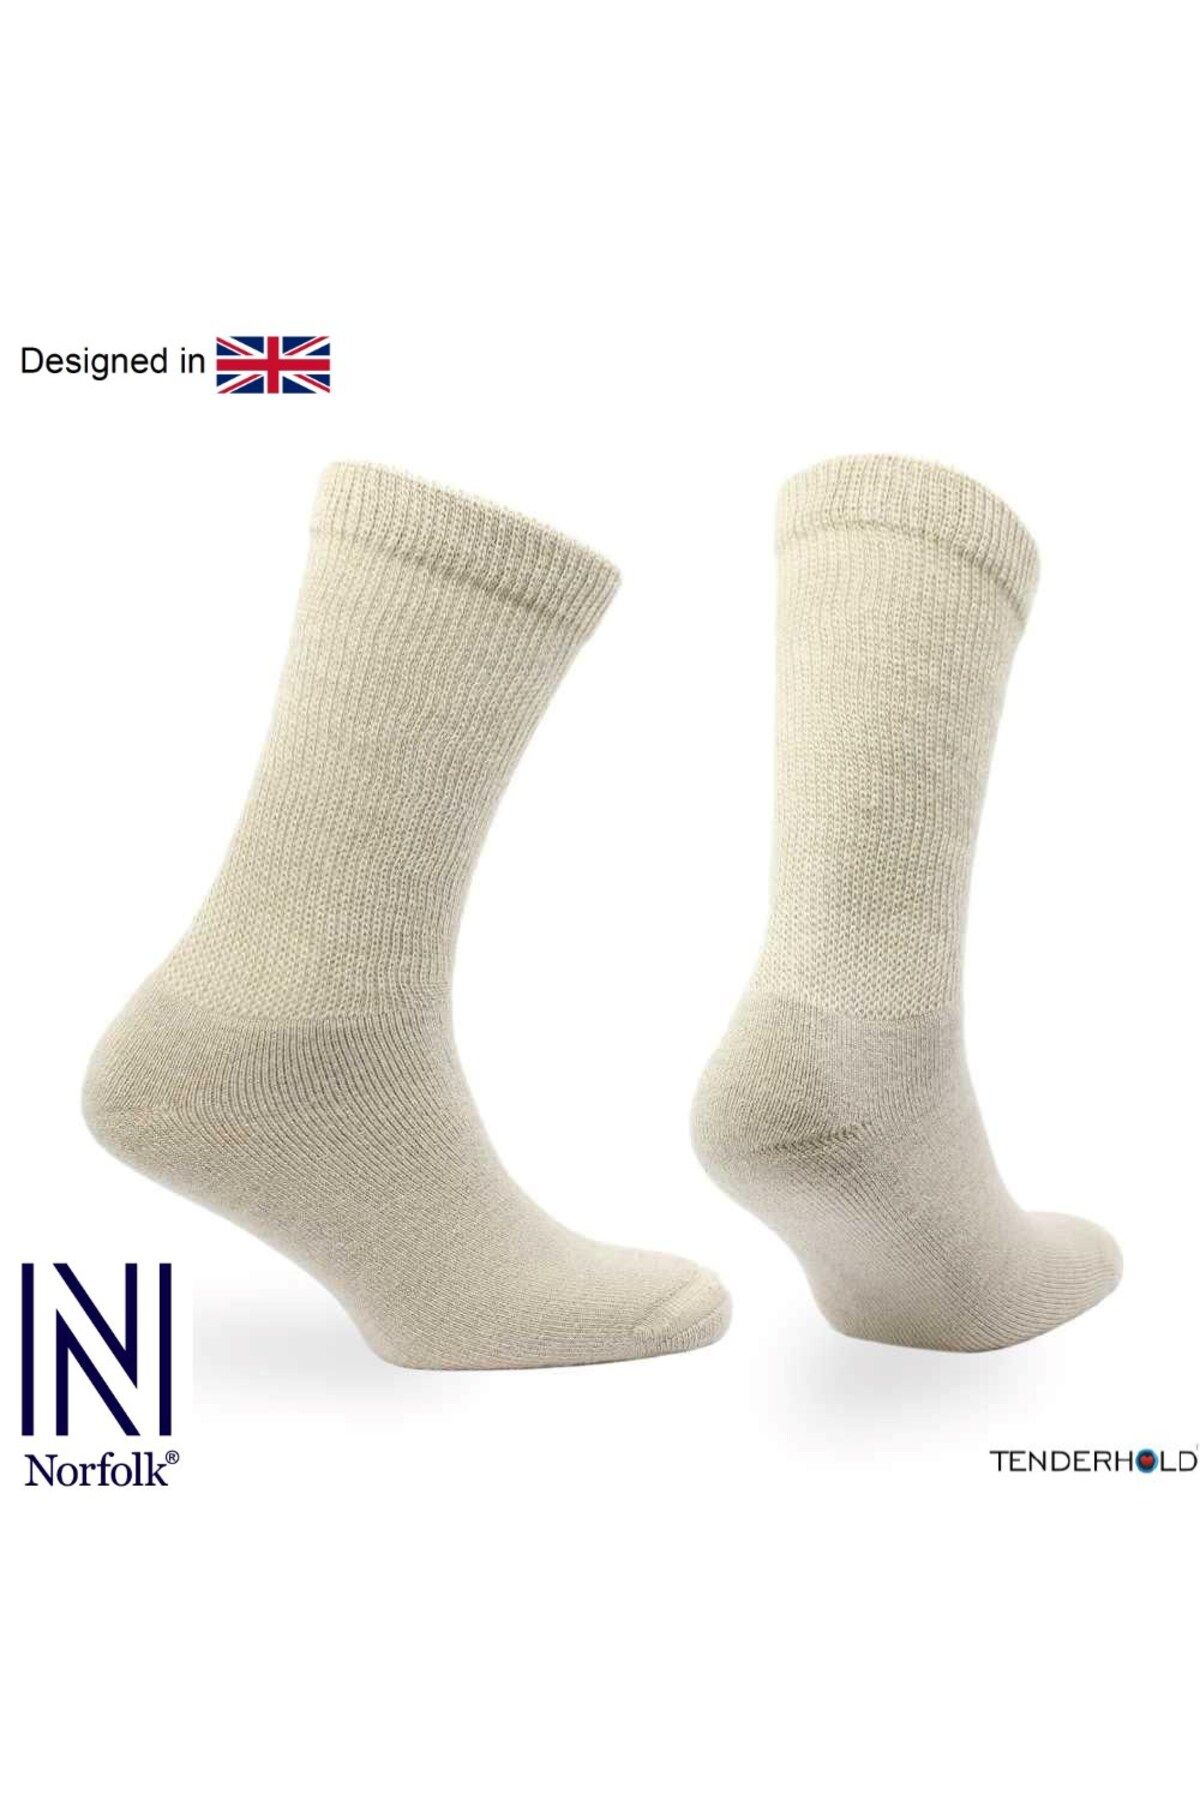 Norfolk PETER Yün - Stretch+ Teknolojisine Sahip Tam Yastıklı Ekstra Genişleyen Çorap 2 Çift Paket